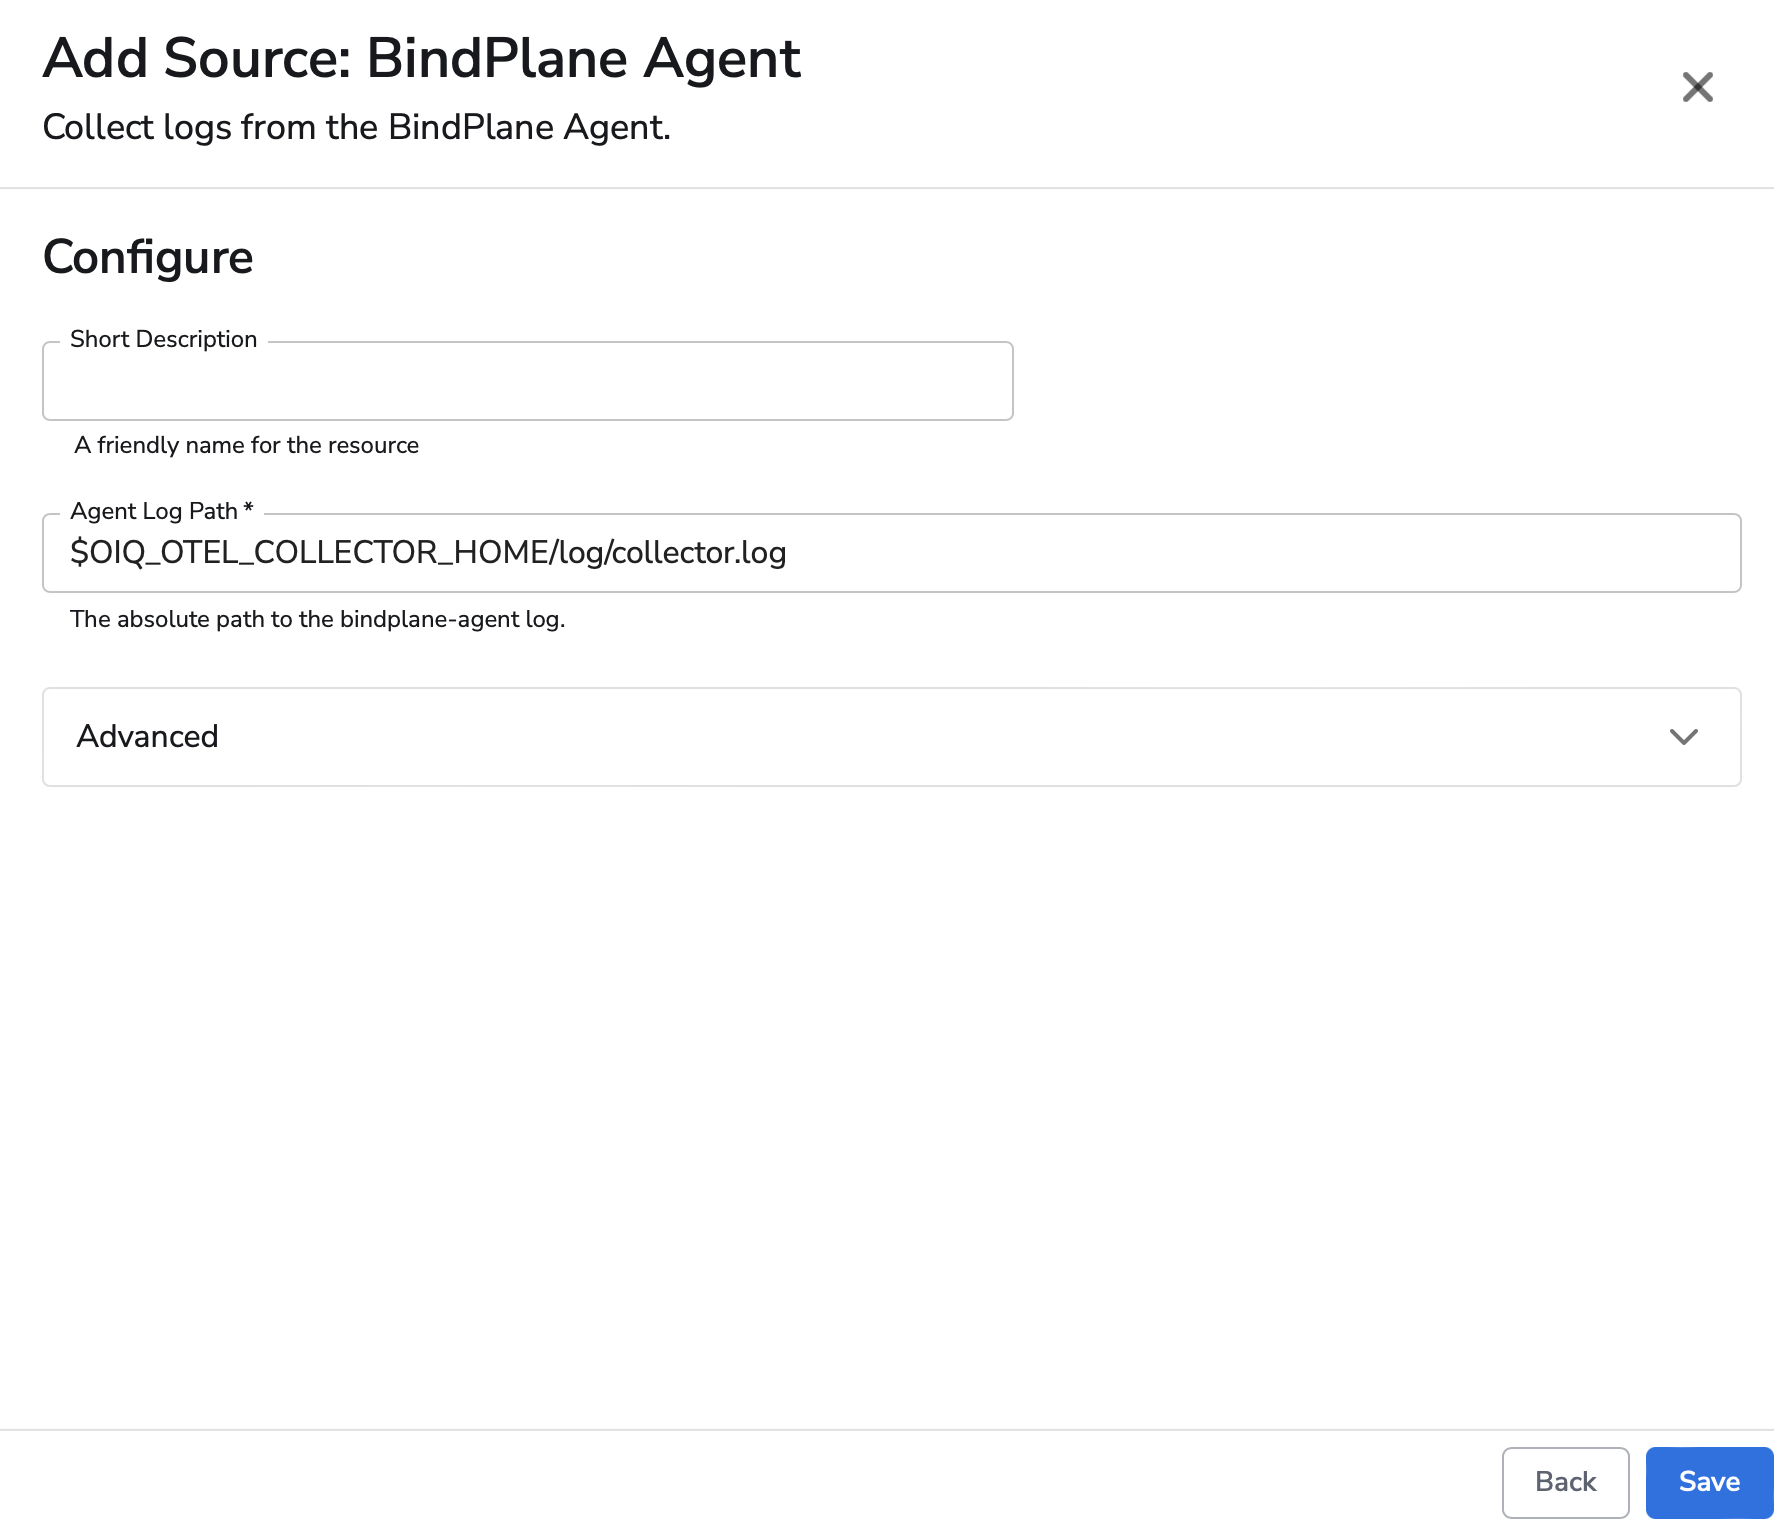 observIQ docs - Adding a Bindplane Agent source - image 2